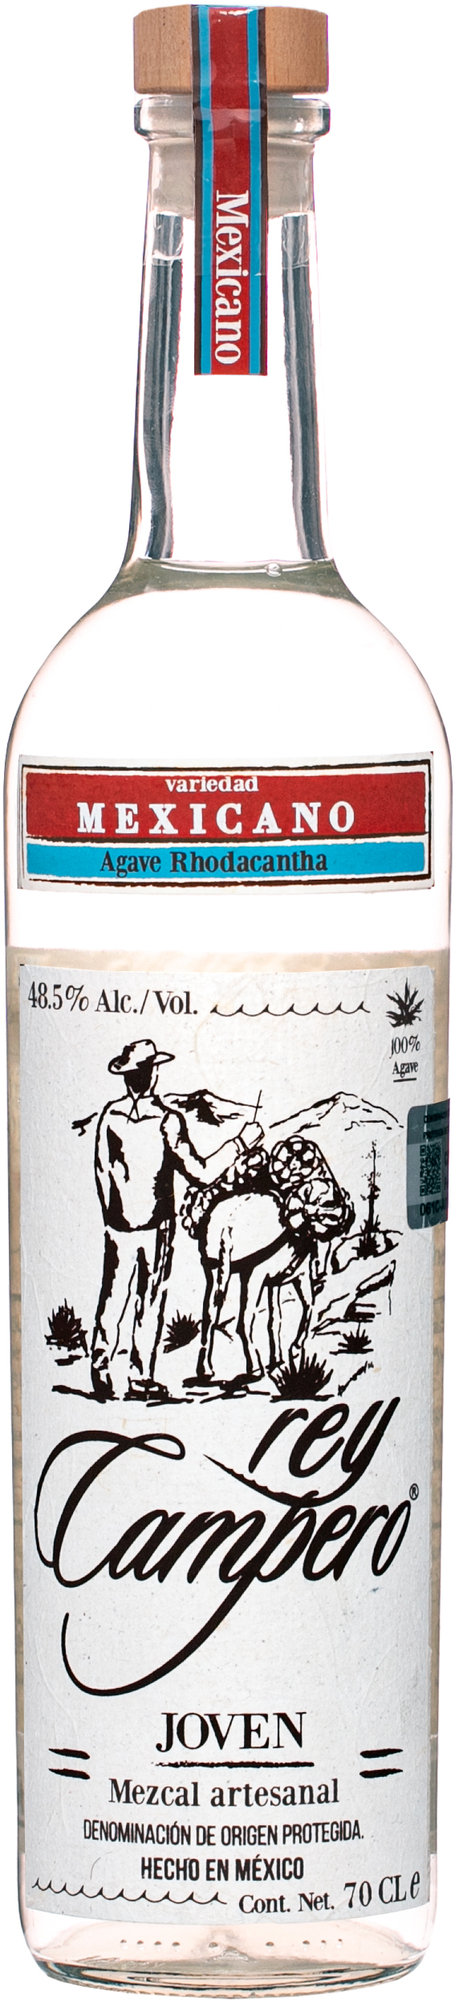 Rey Campero Mexicano 48,5% 0,7l (čistá fľaša)